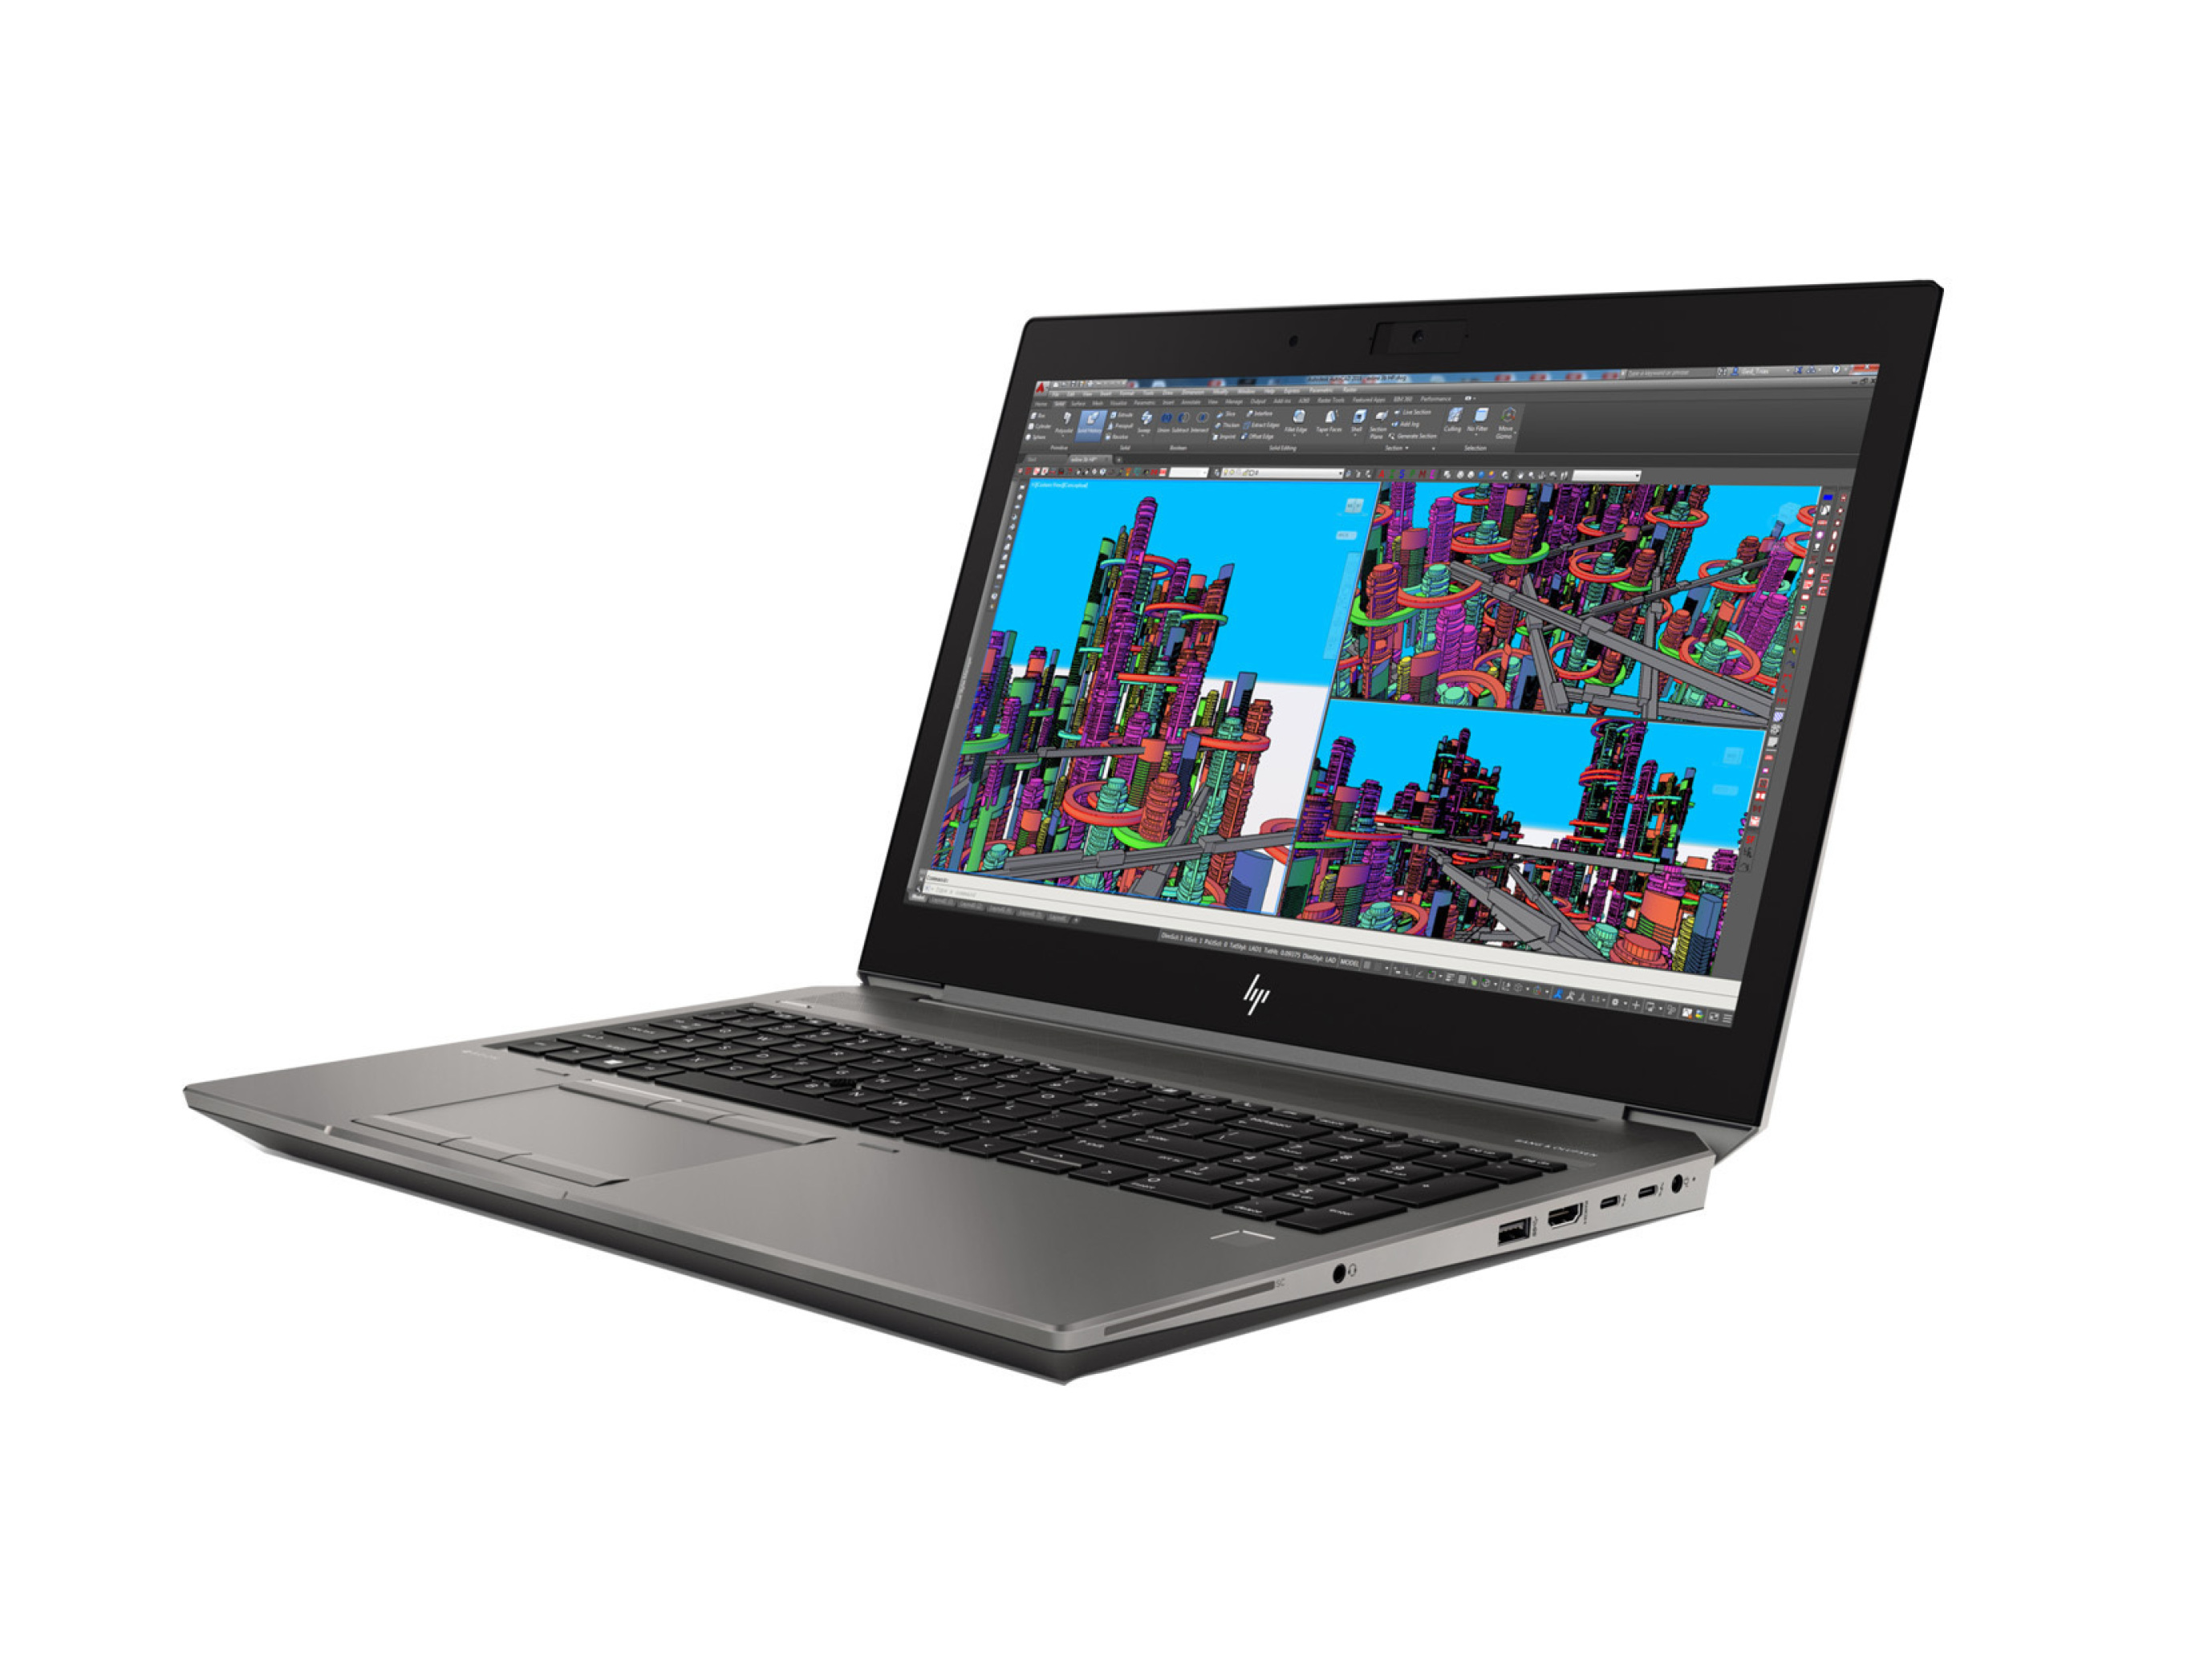  HP ZBook 15 G5 i7 8850H - 32GB DDR4 - 512GB SSD - Quadro P1000 4GB | لاکچری لپ تاپ 